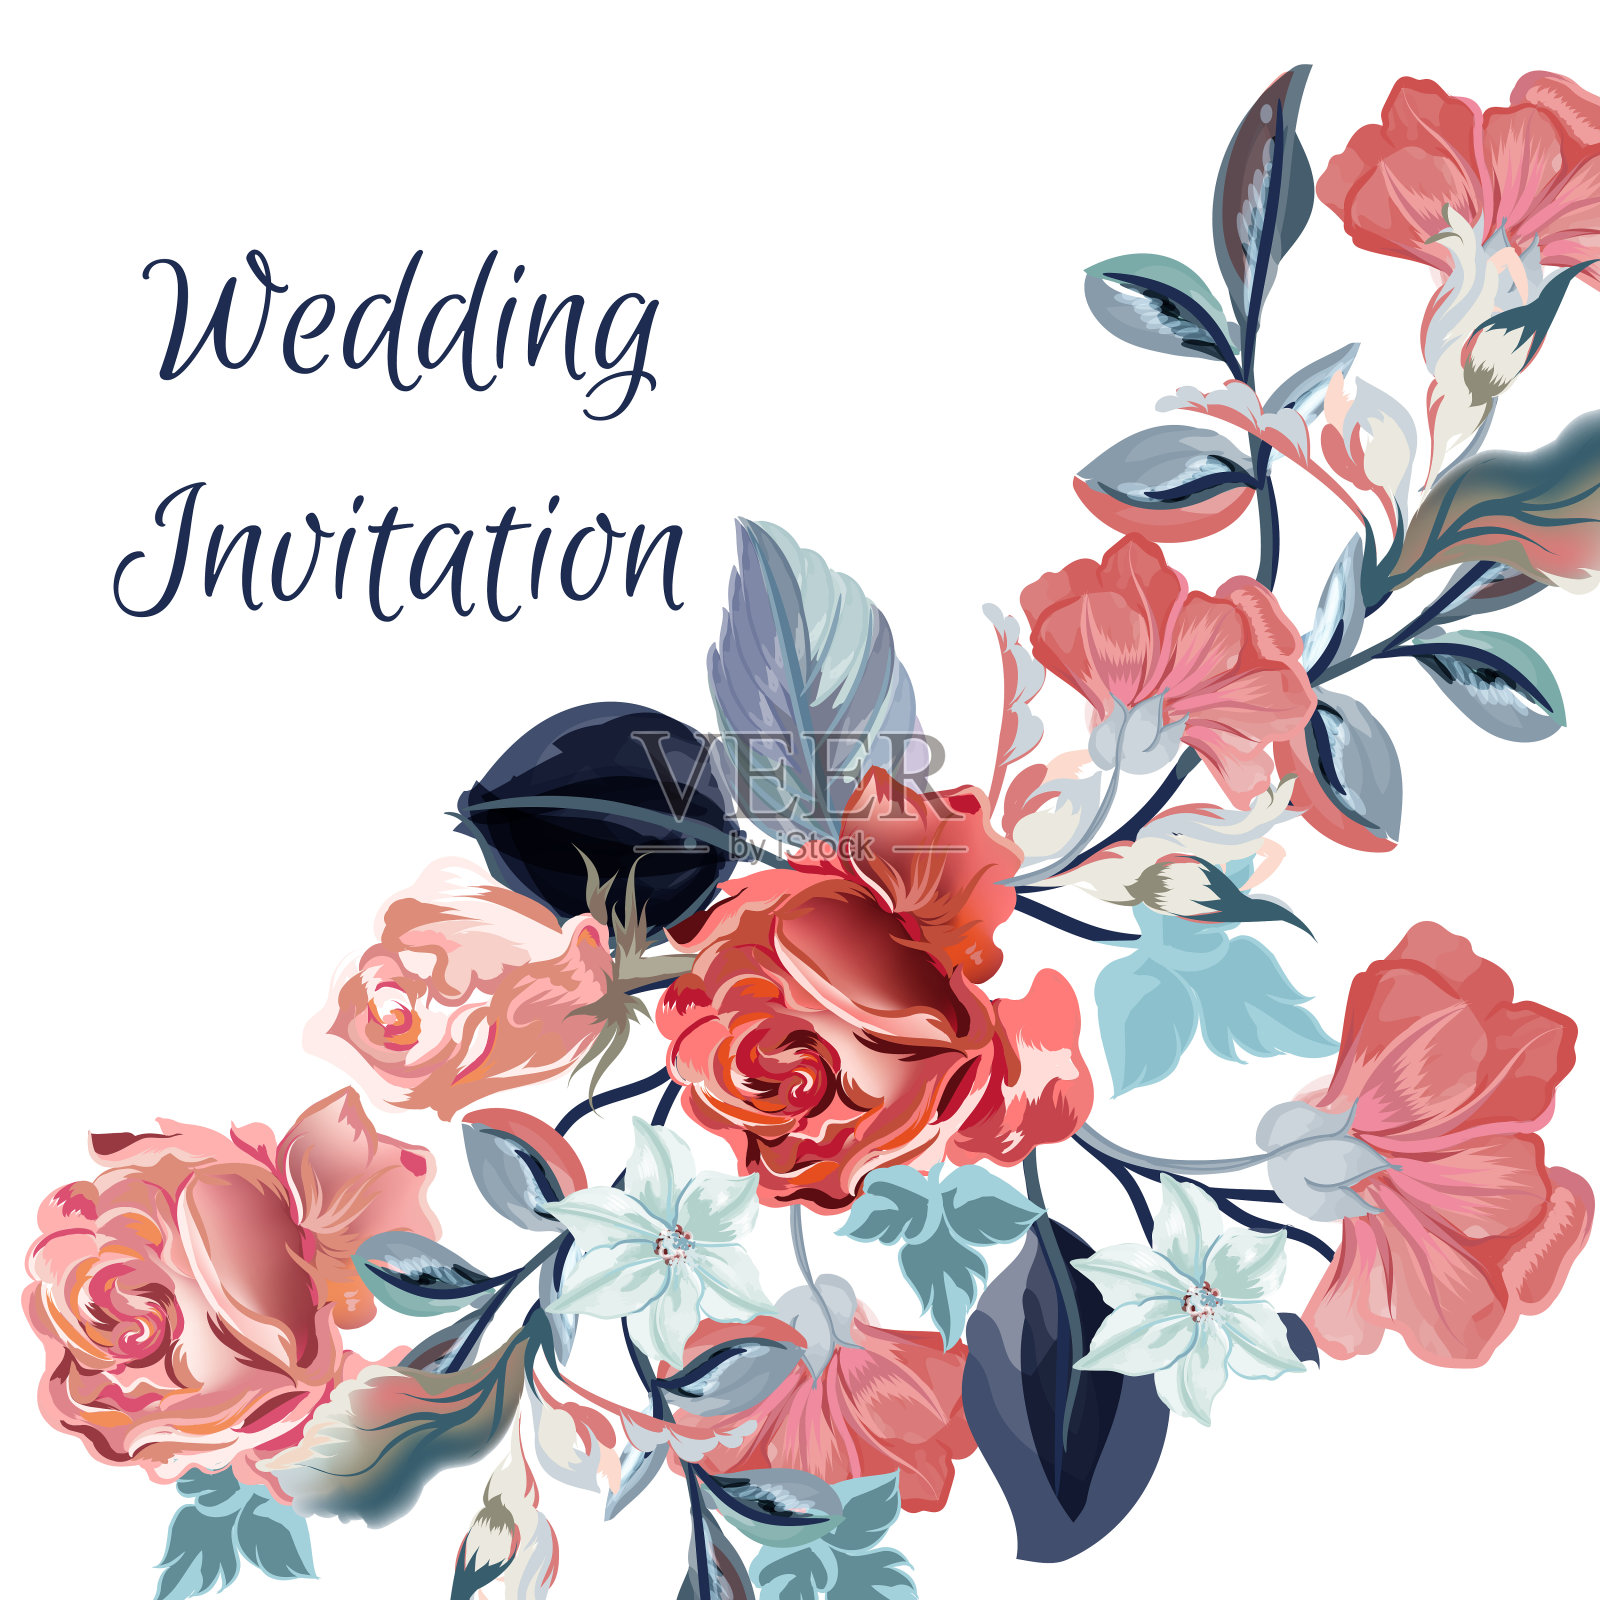 保存带有鲜花的日期卡片或婚礼邀请函设计模板素材